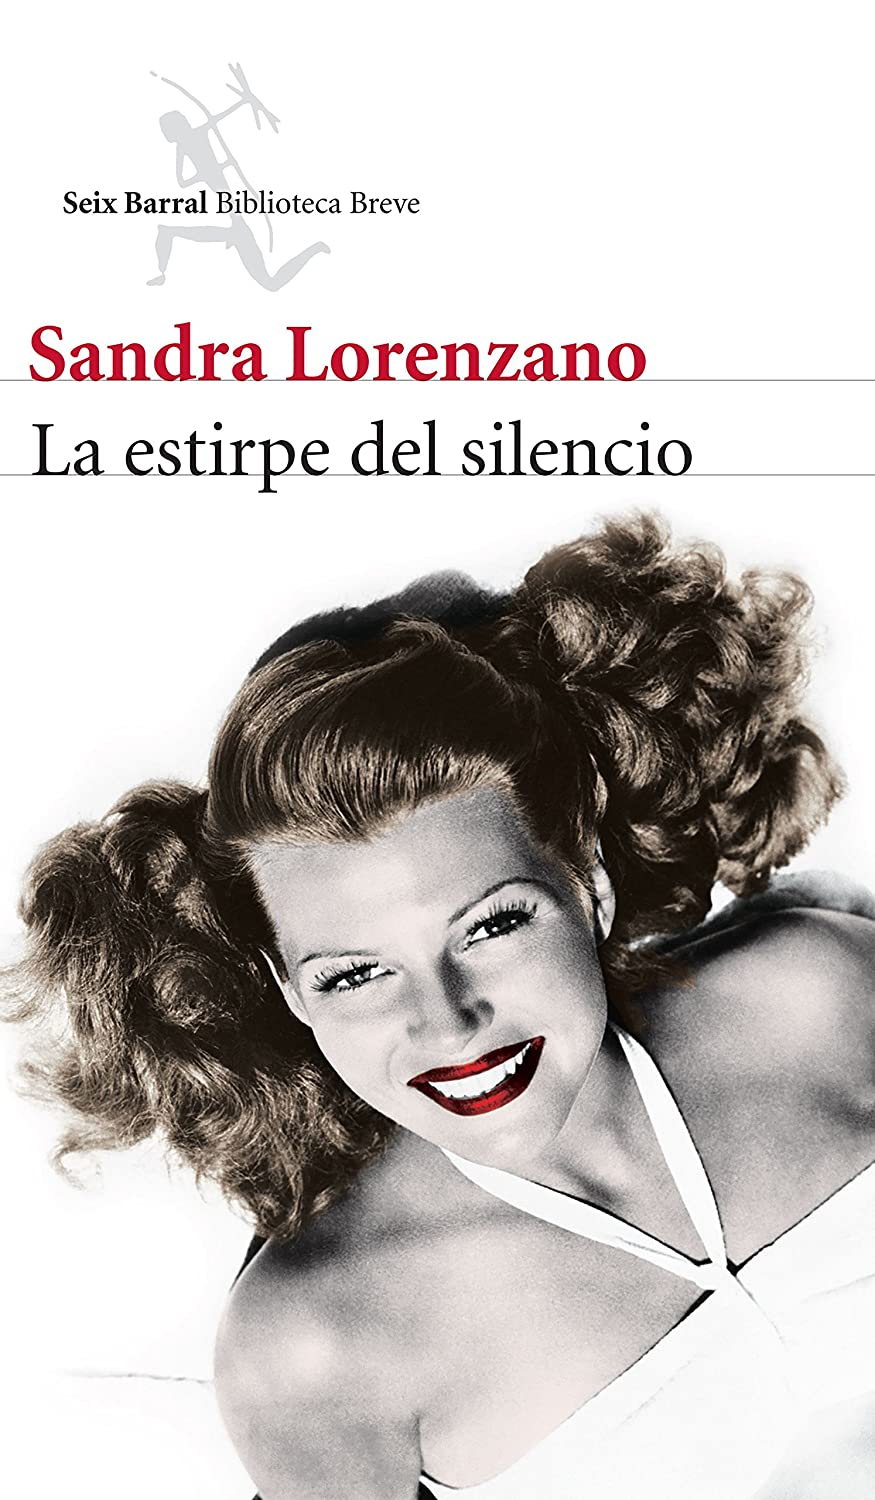 La estirpe del silencio - Sandra Lorenzano (Próximo lanzamiento) 81mJhFTy9XL._SL1500_